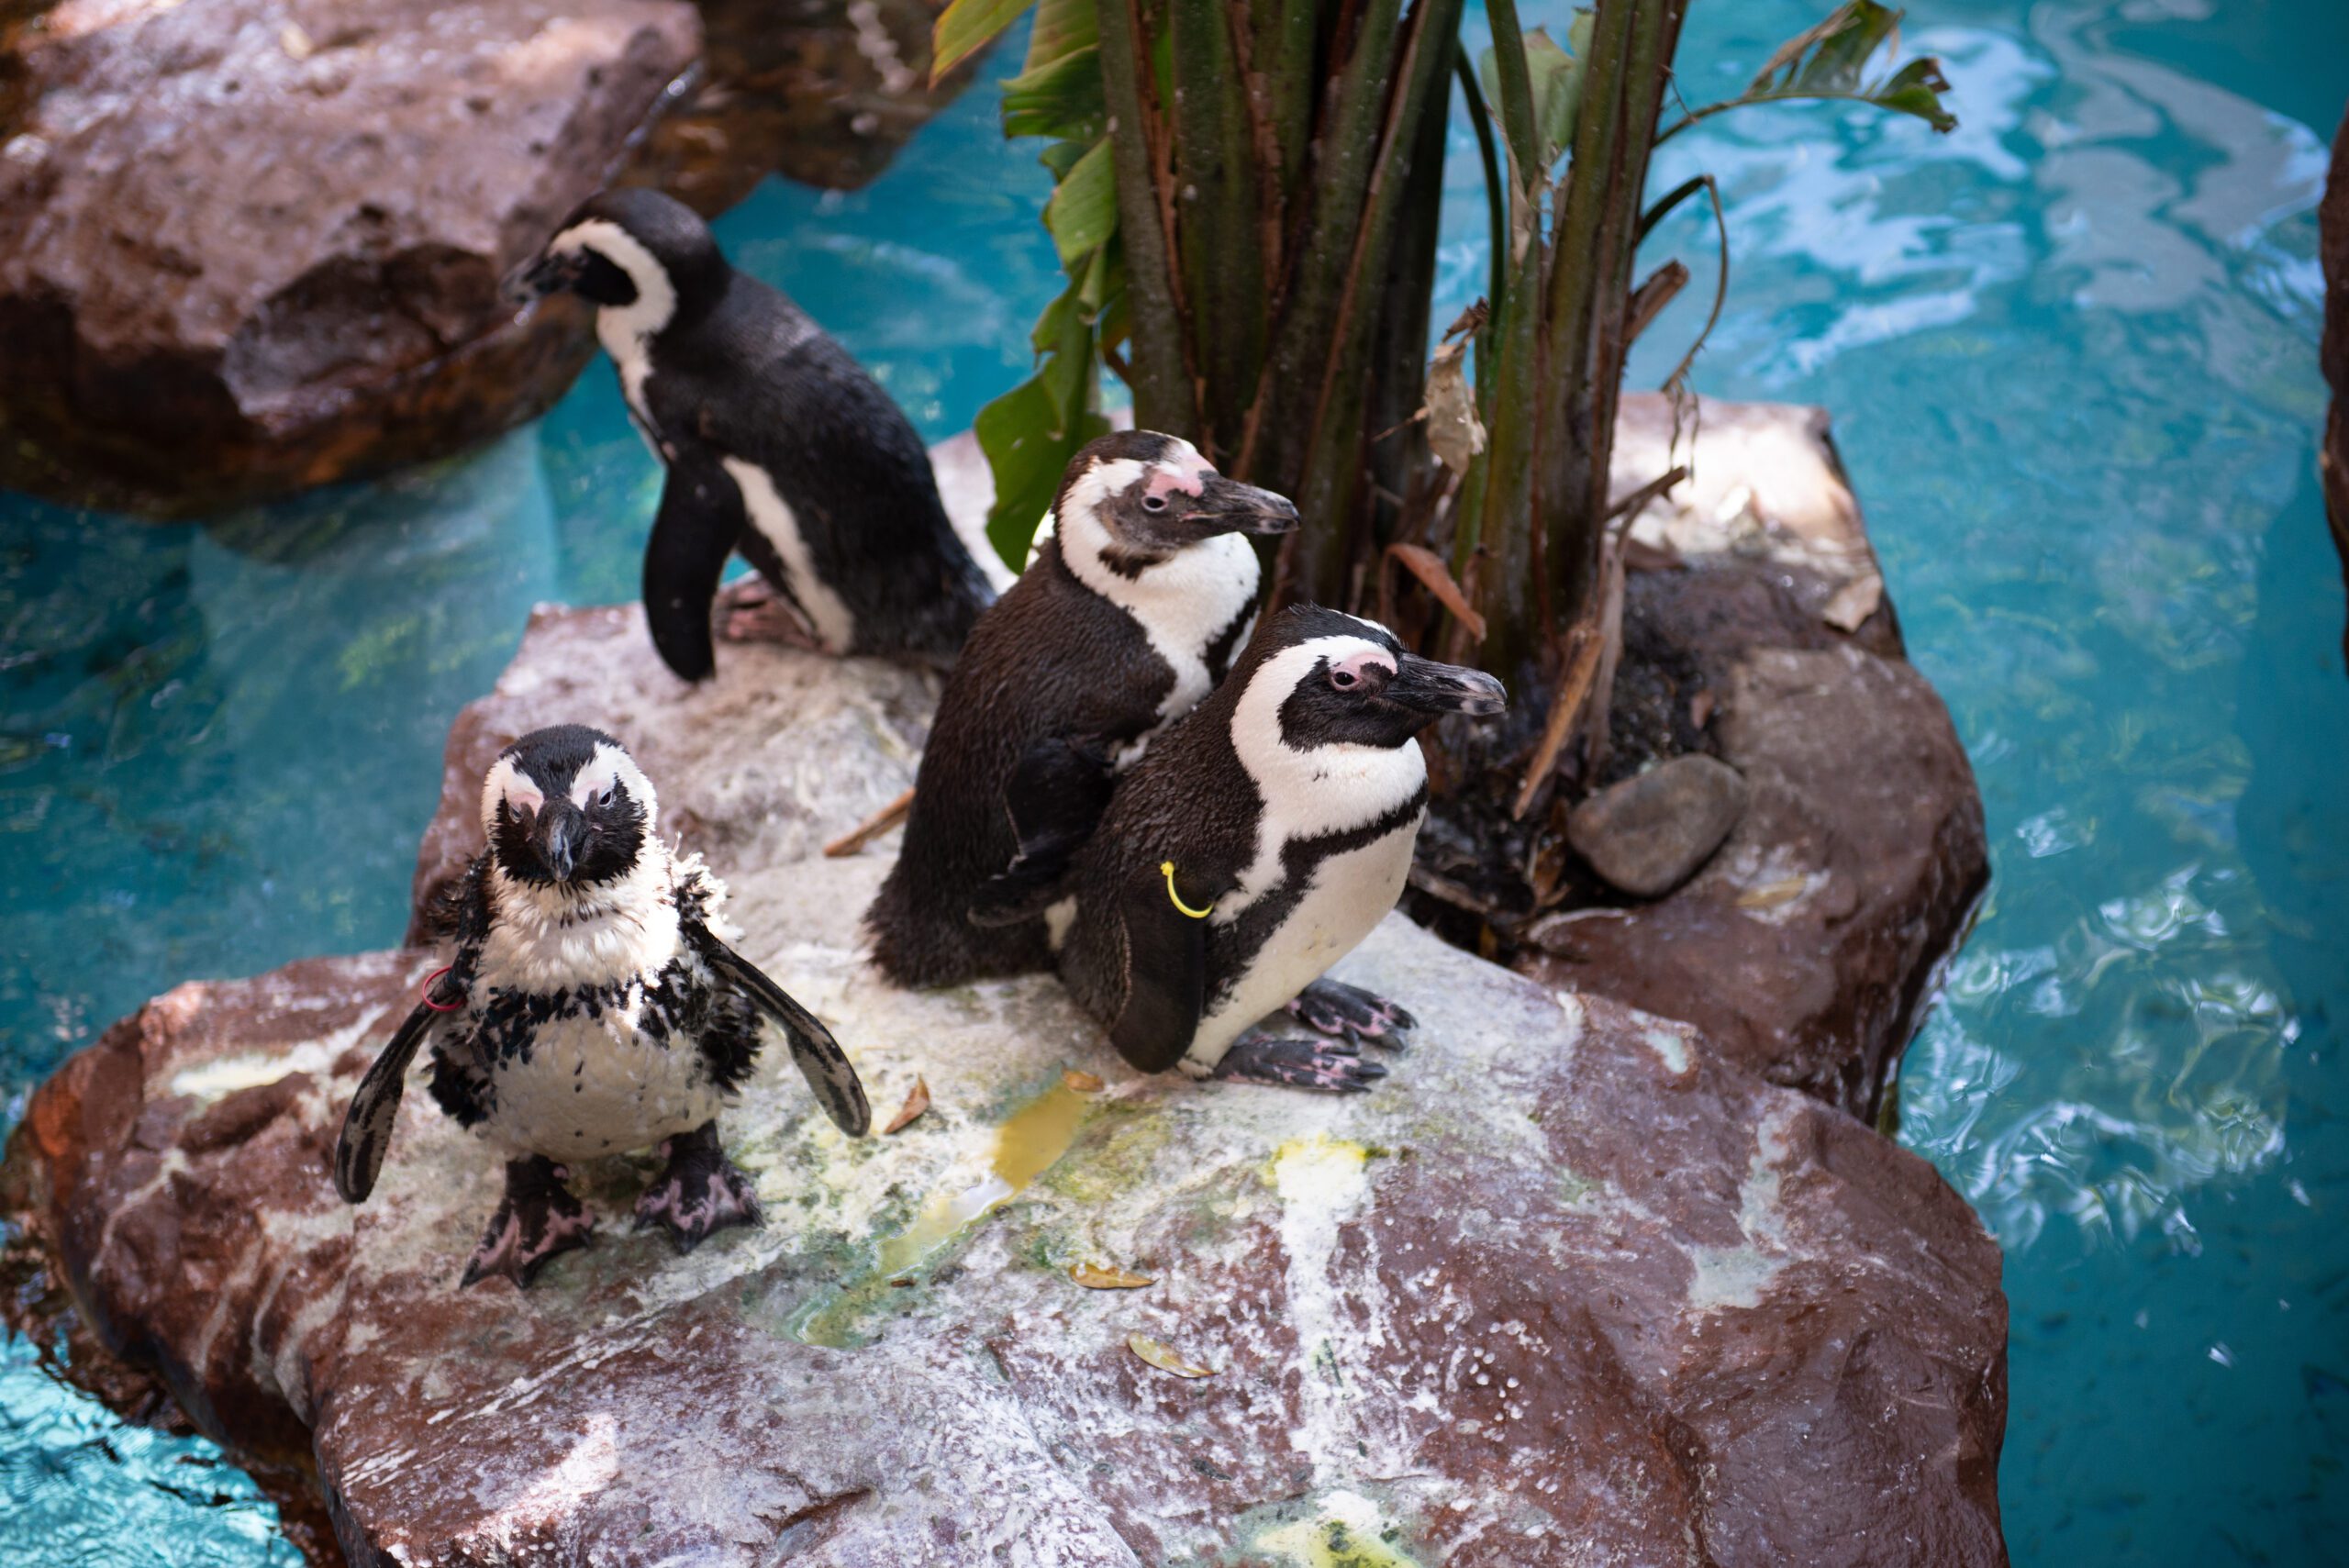 Image Of Penguins at the Dallas World Aquarium